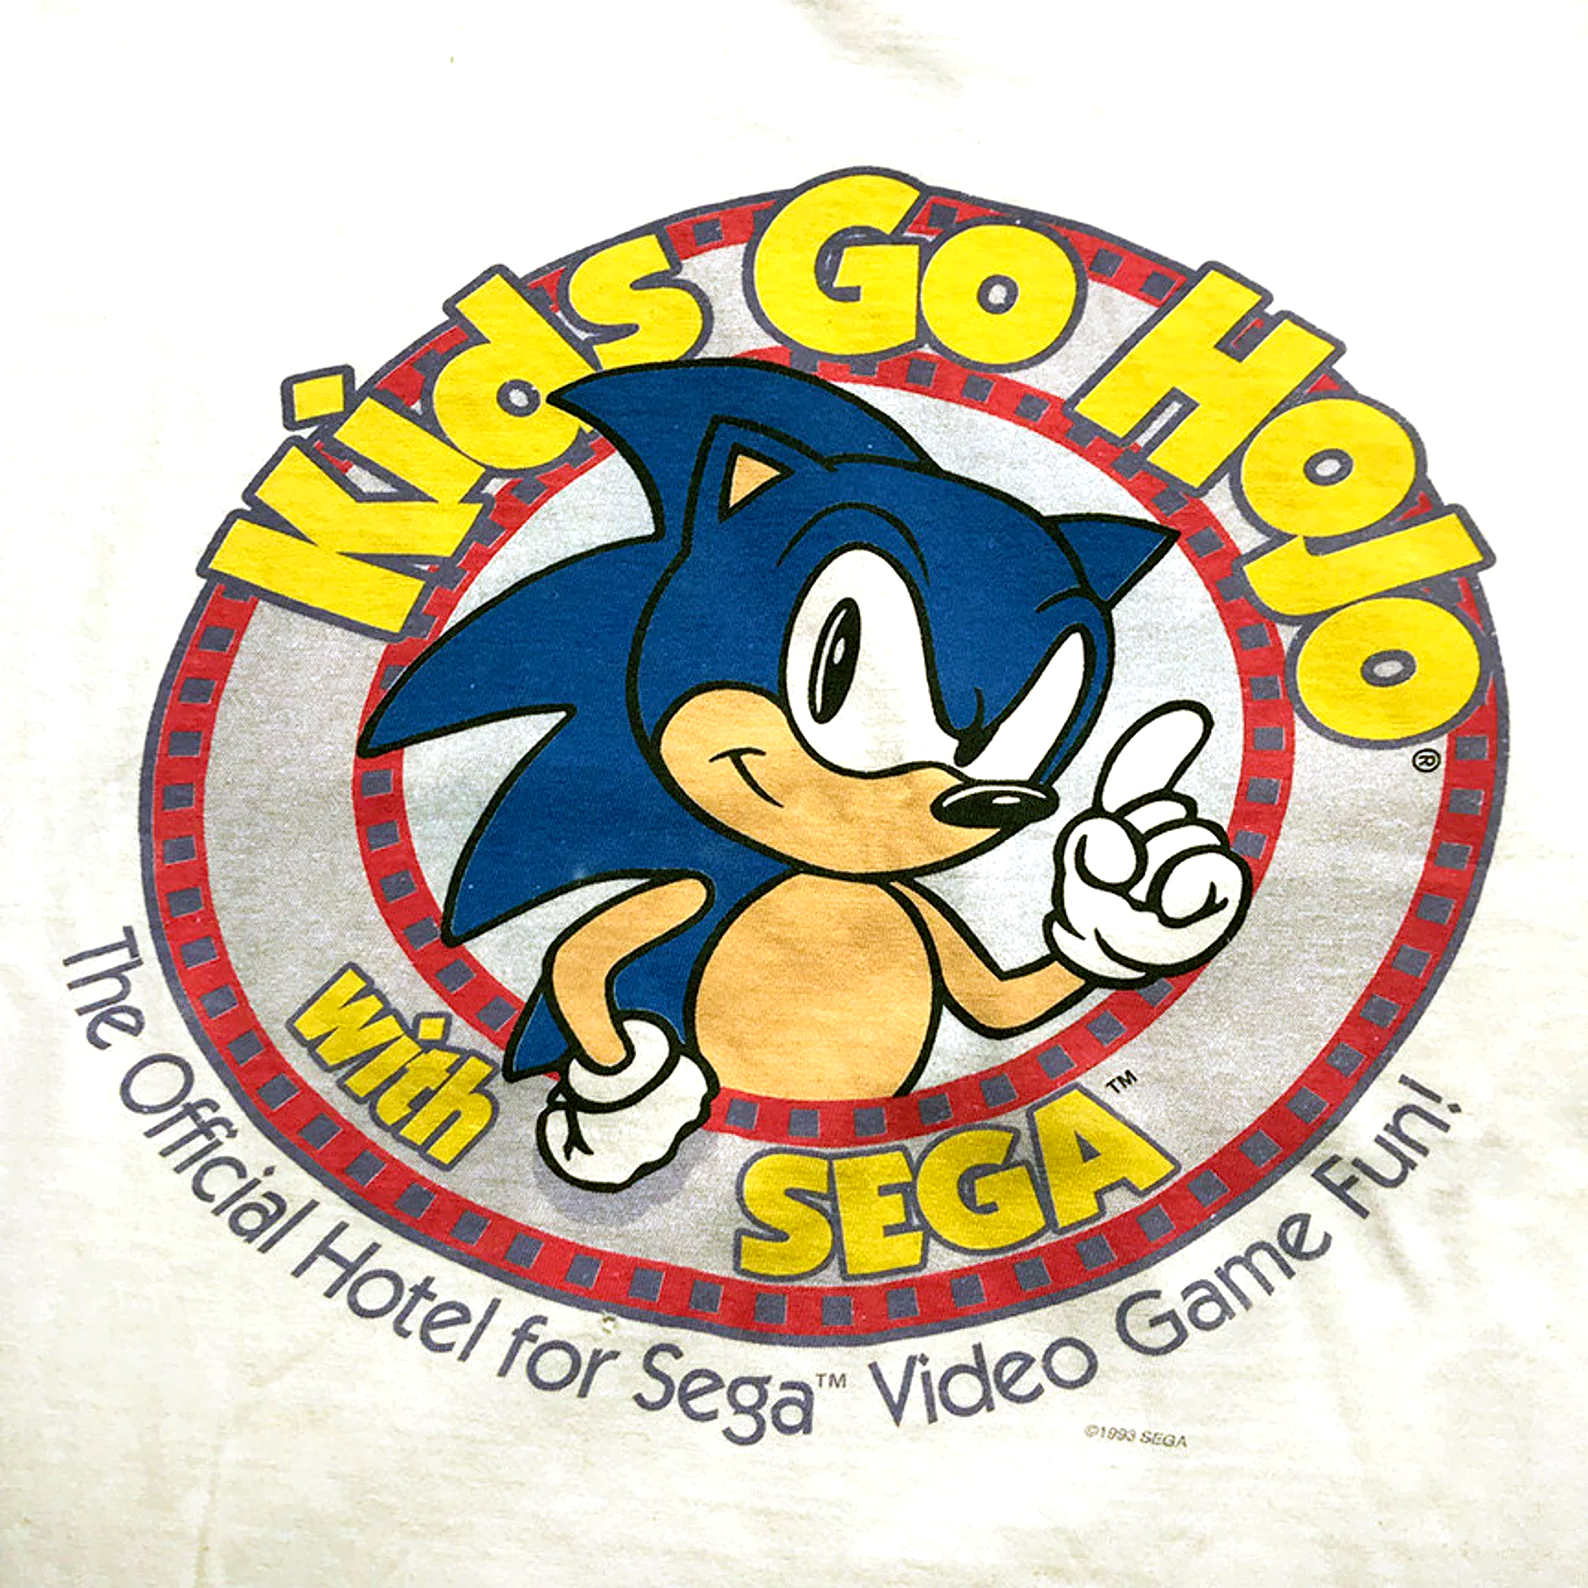 KidsGoHoJowithSega shirt frontdetail.png